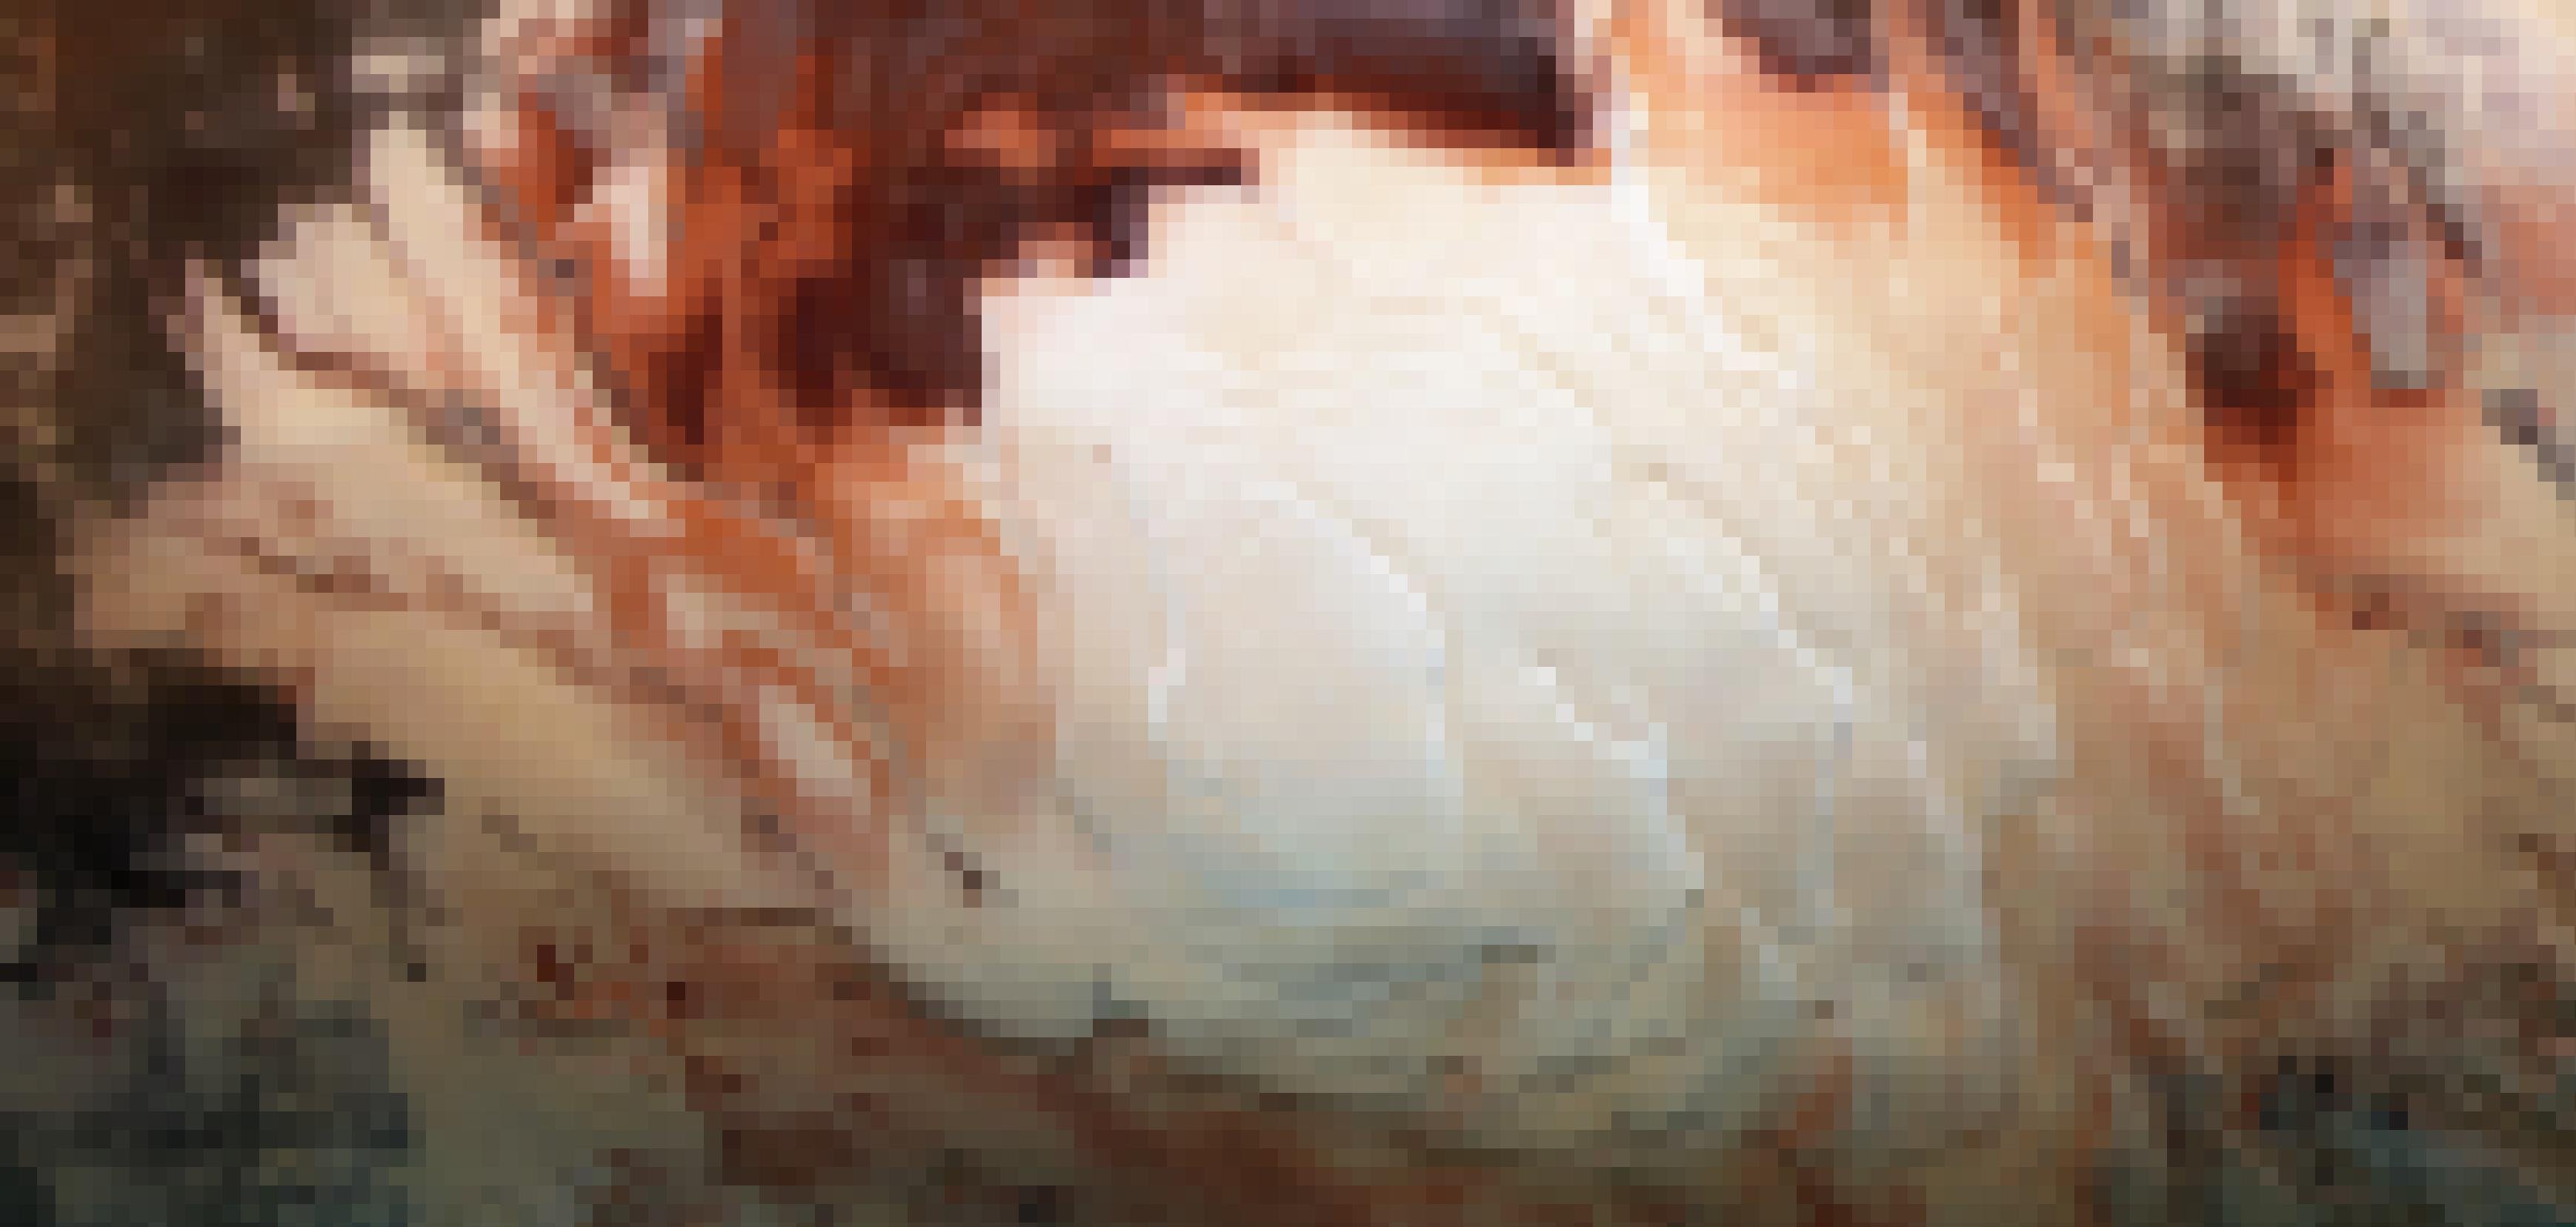 Der Südpol des Mars mit den spiralförmig gedrehten Gletschern wirkt wie der Schaum auf einer Tasse Cappuccino